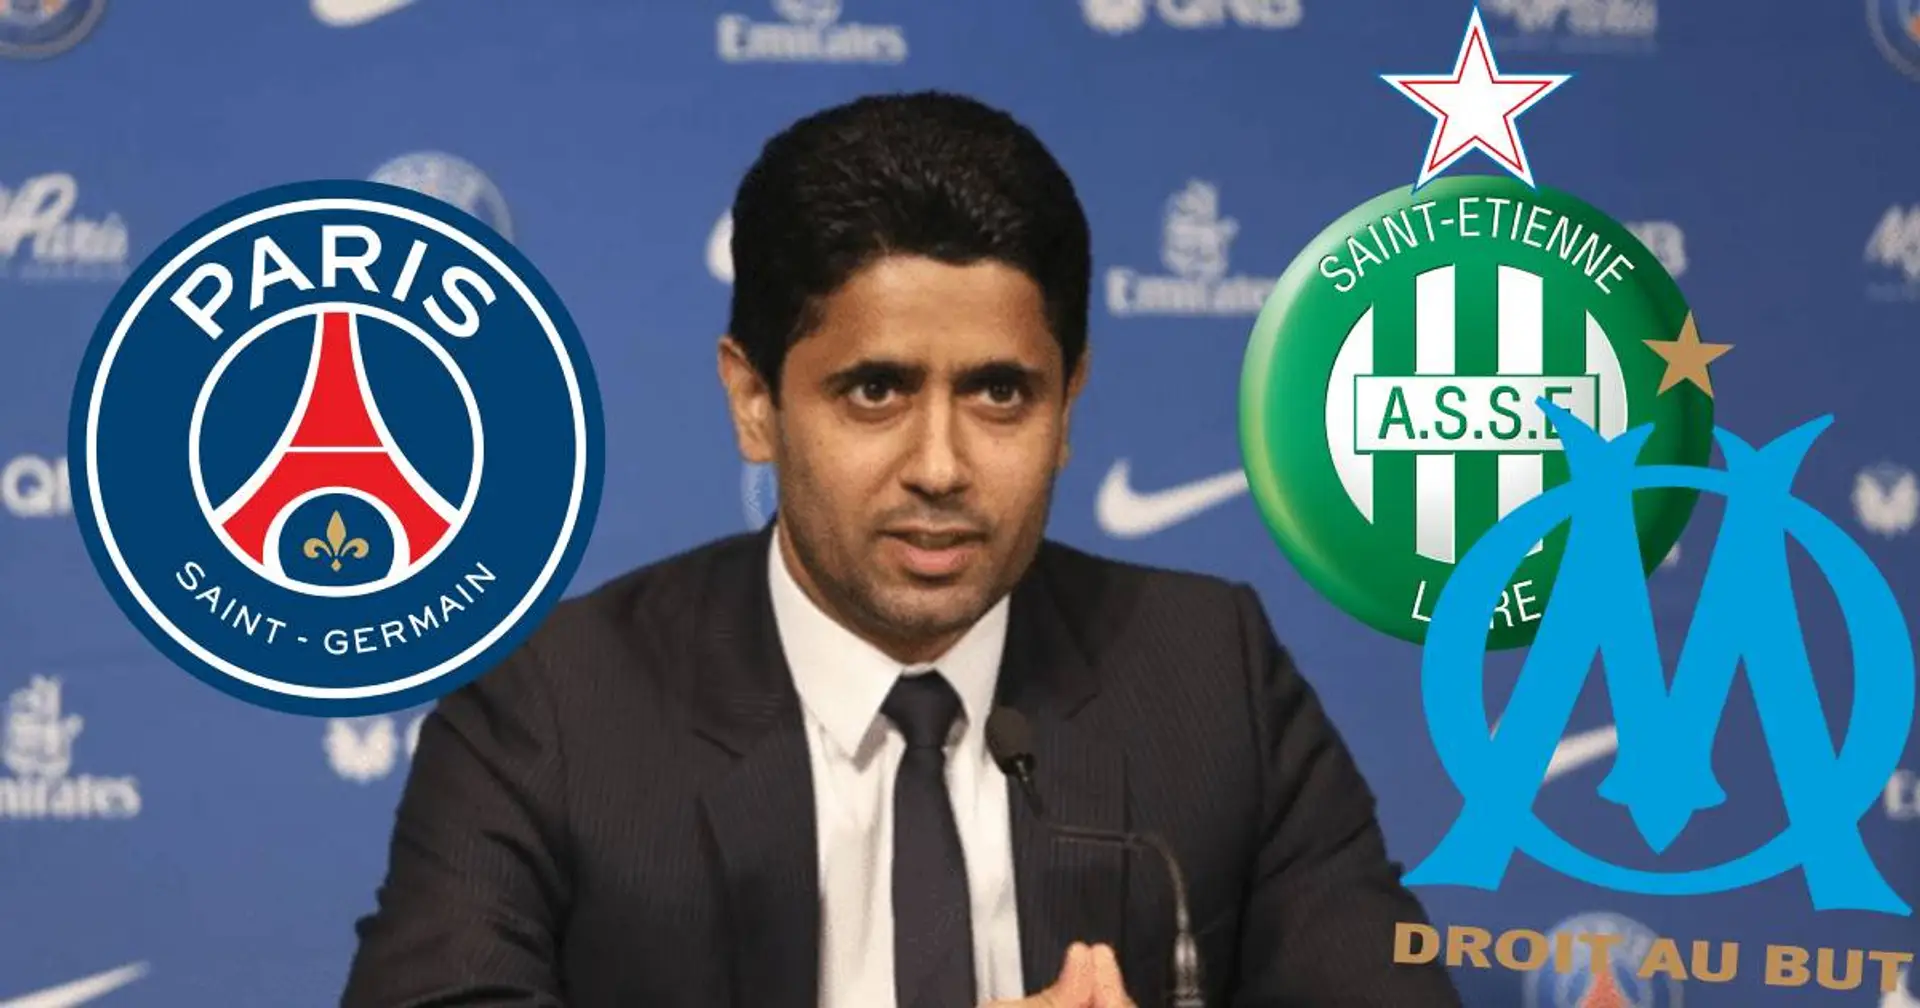 Le PSG ne souhaite pas ajouter une étoile à son logo - Seuls 2 clubs en Ligue 1 en ont une